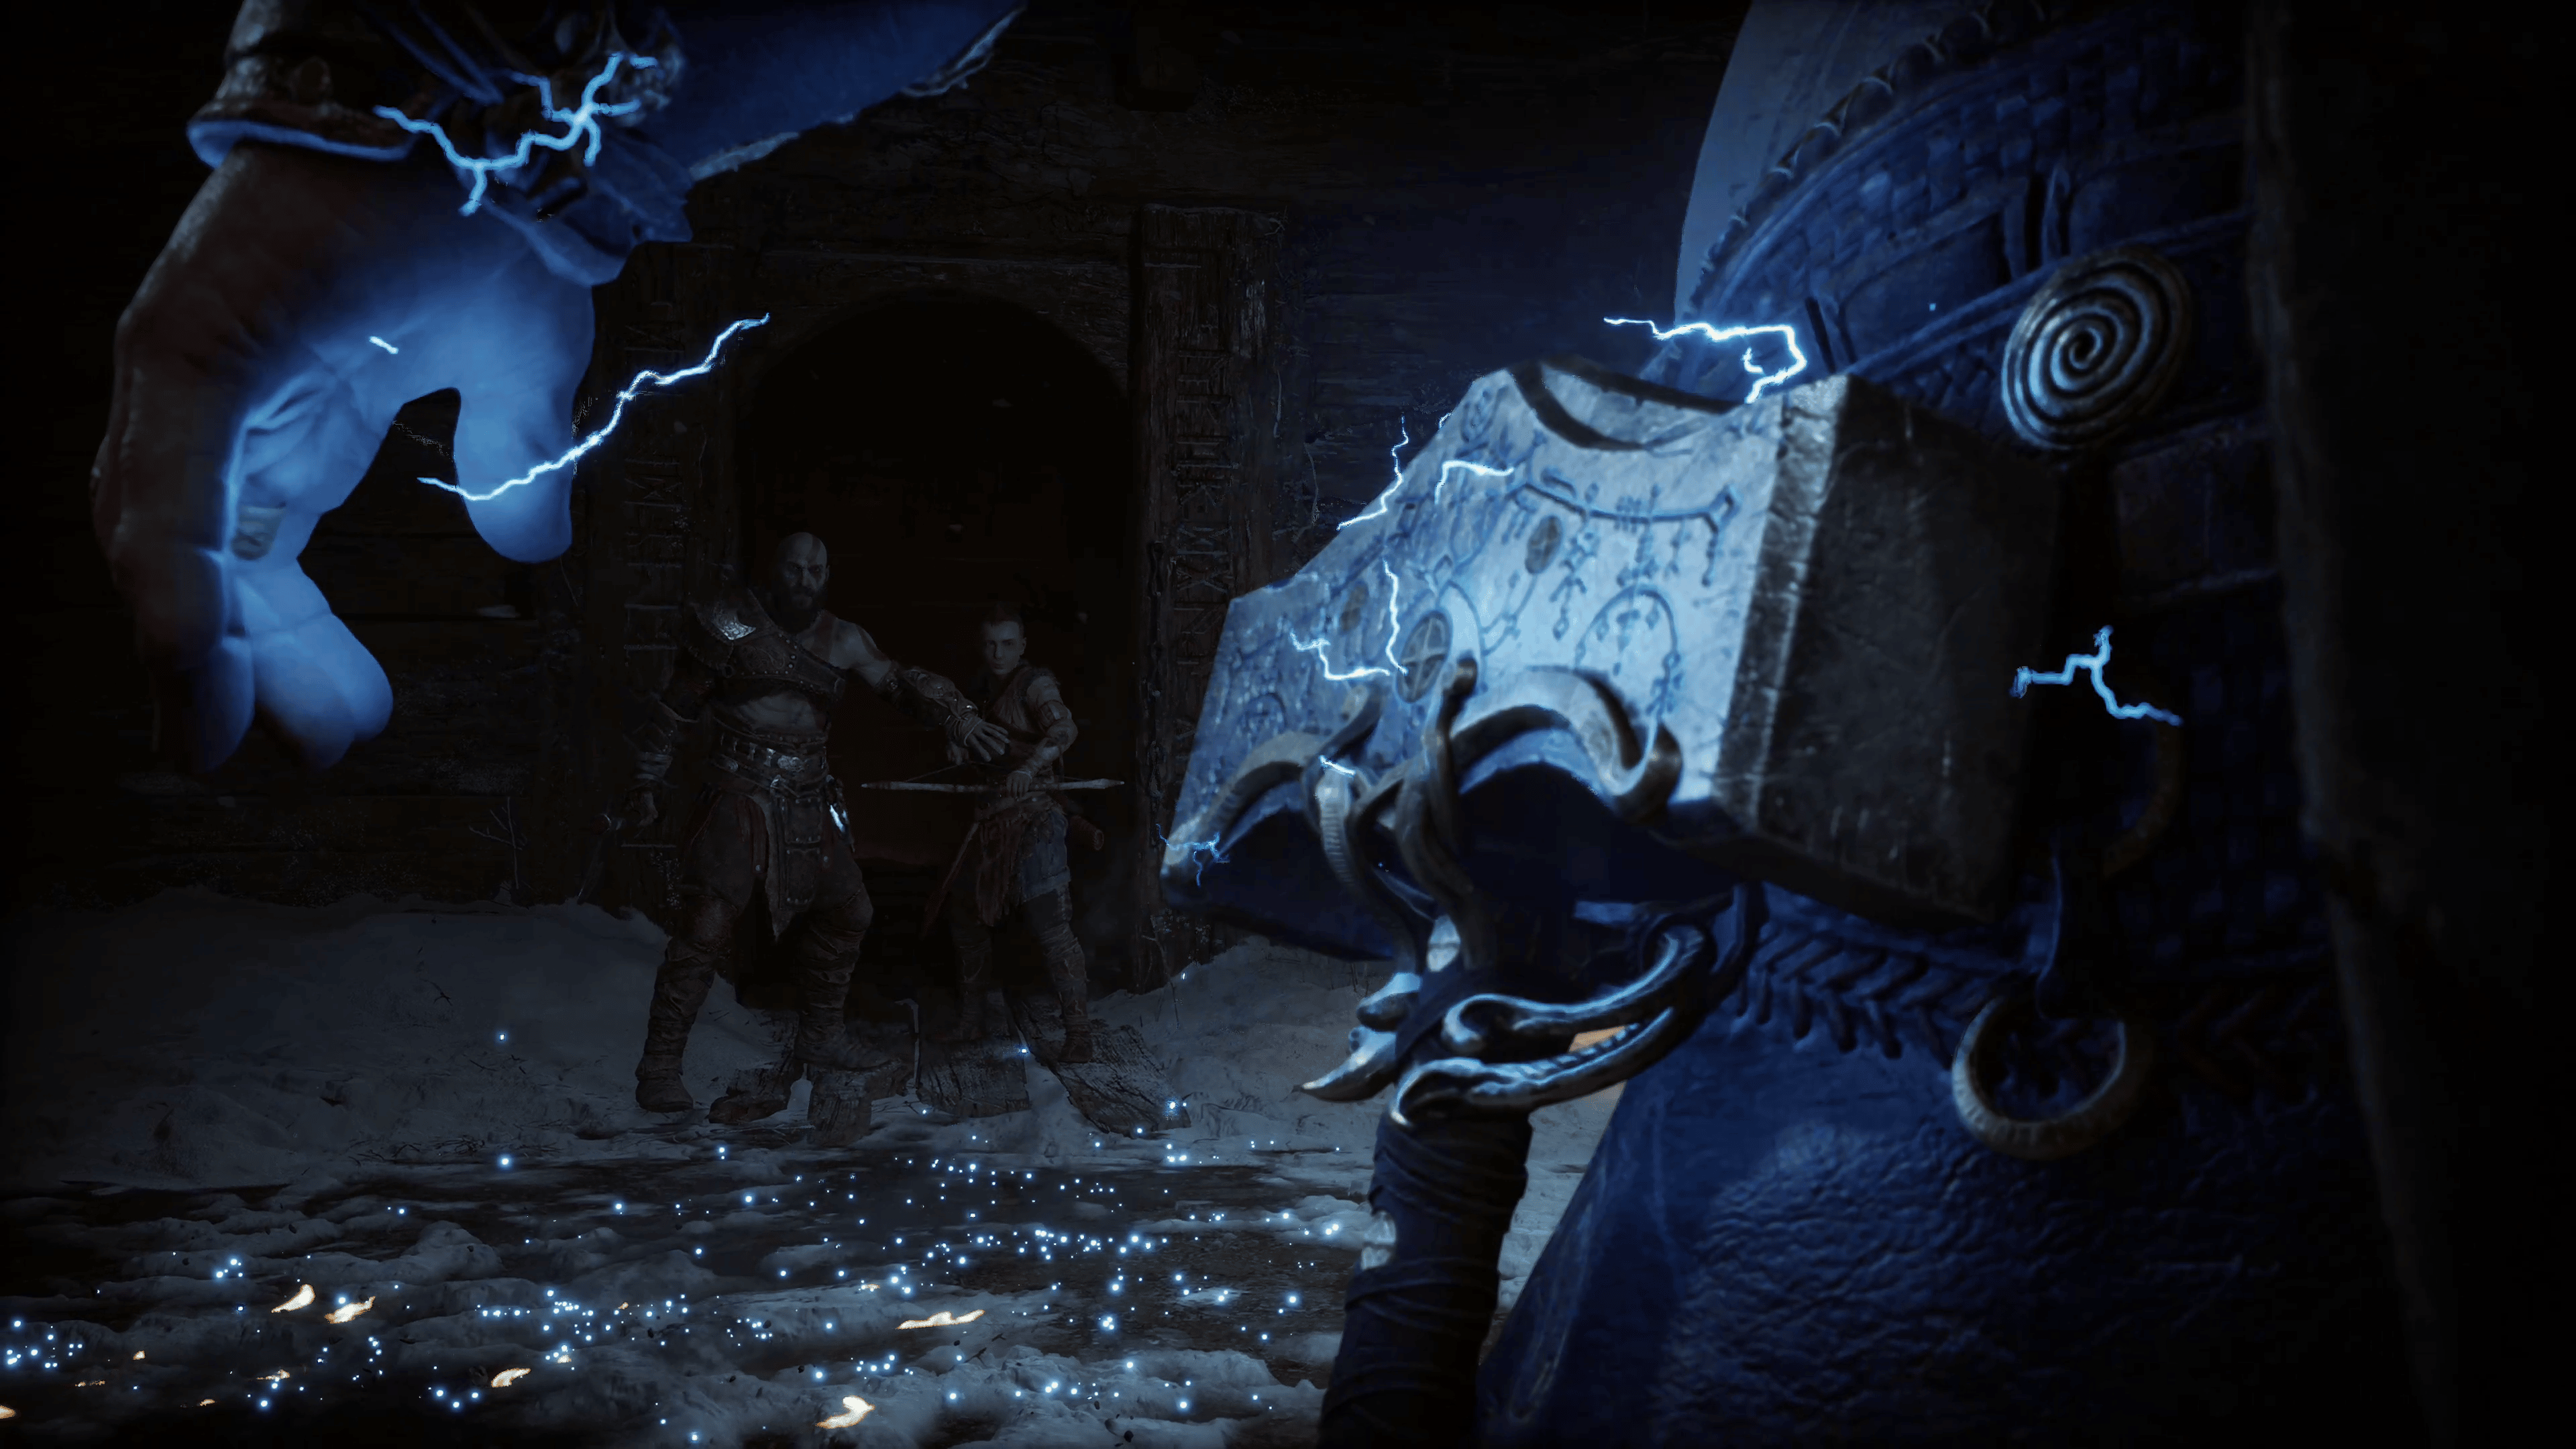 God of War Ragnarok Ending Explained by Narrative Director